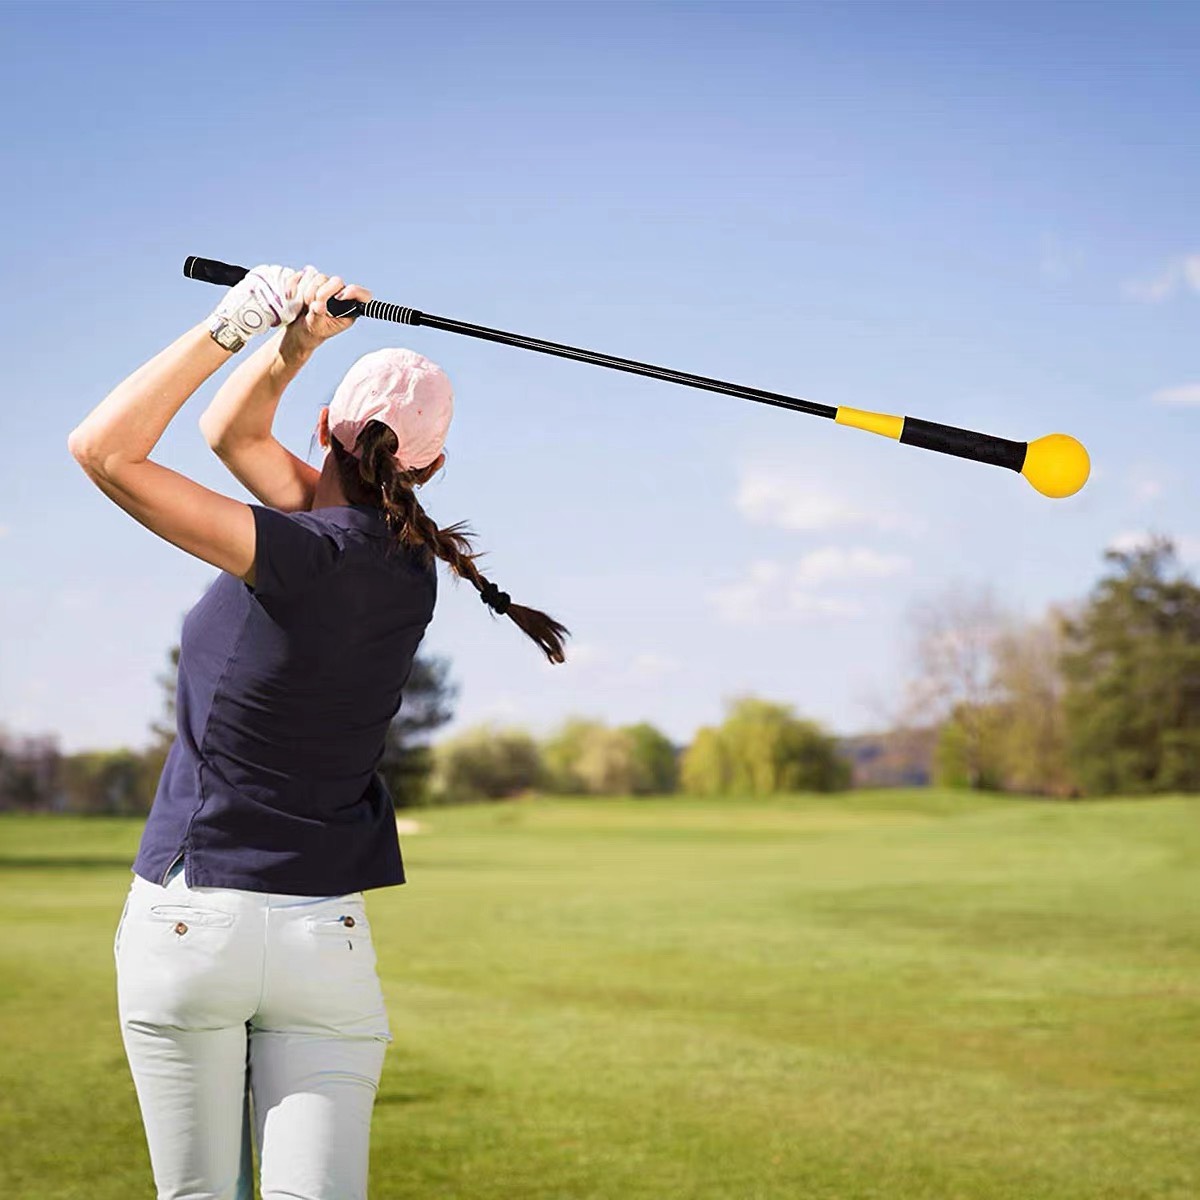 Gậy tập swing golf cán dẻo tay nắm kỹ thuật hỗ trợ tập thể lực swing hiệu quả GT008